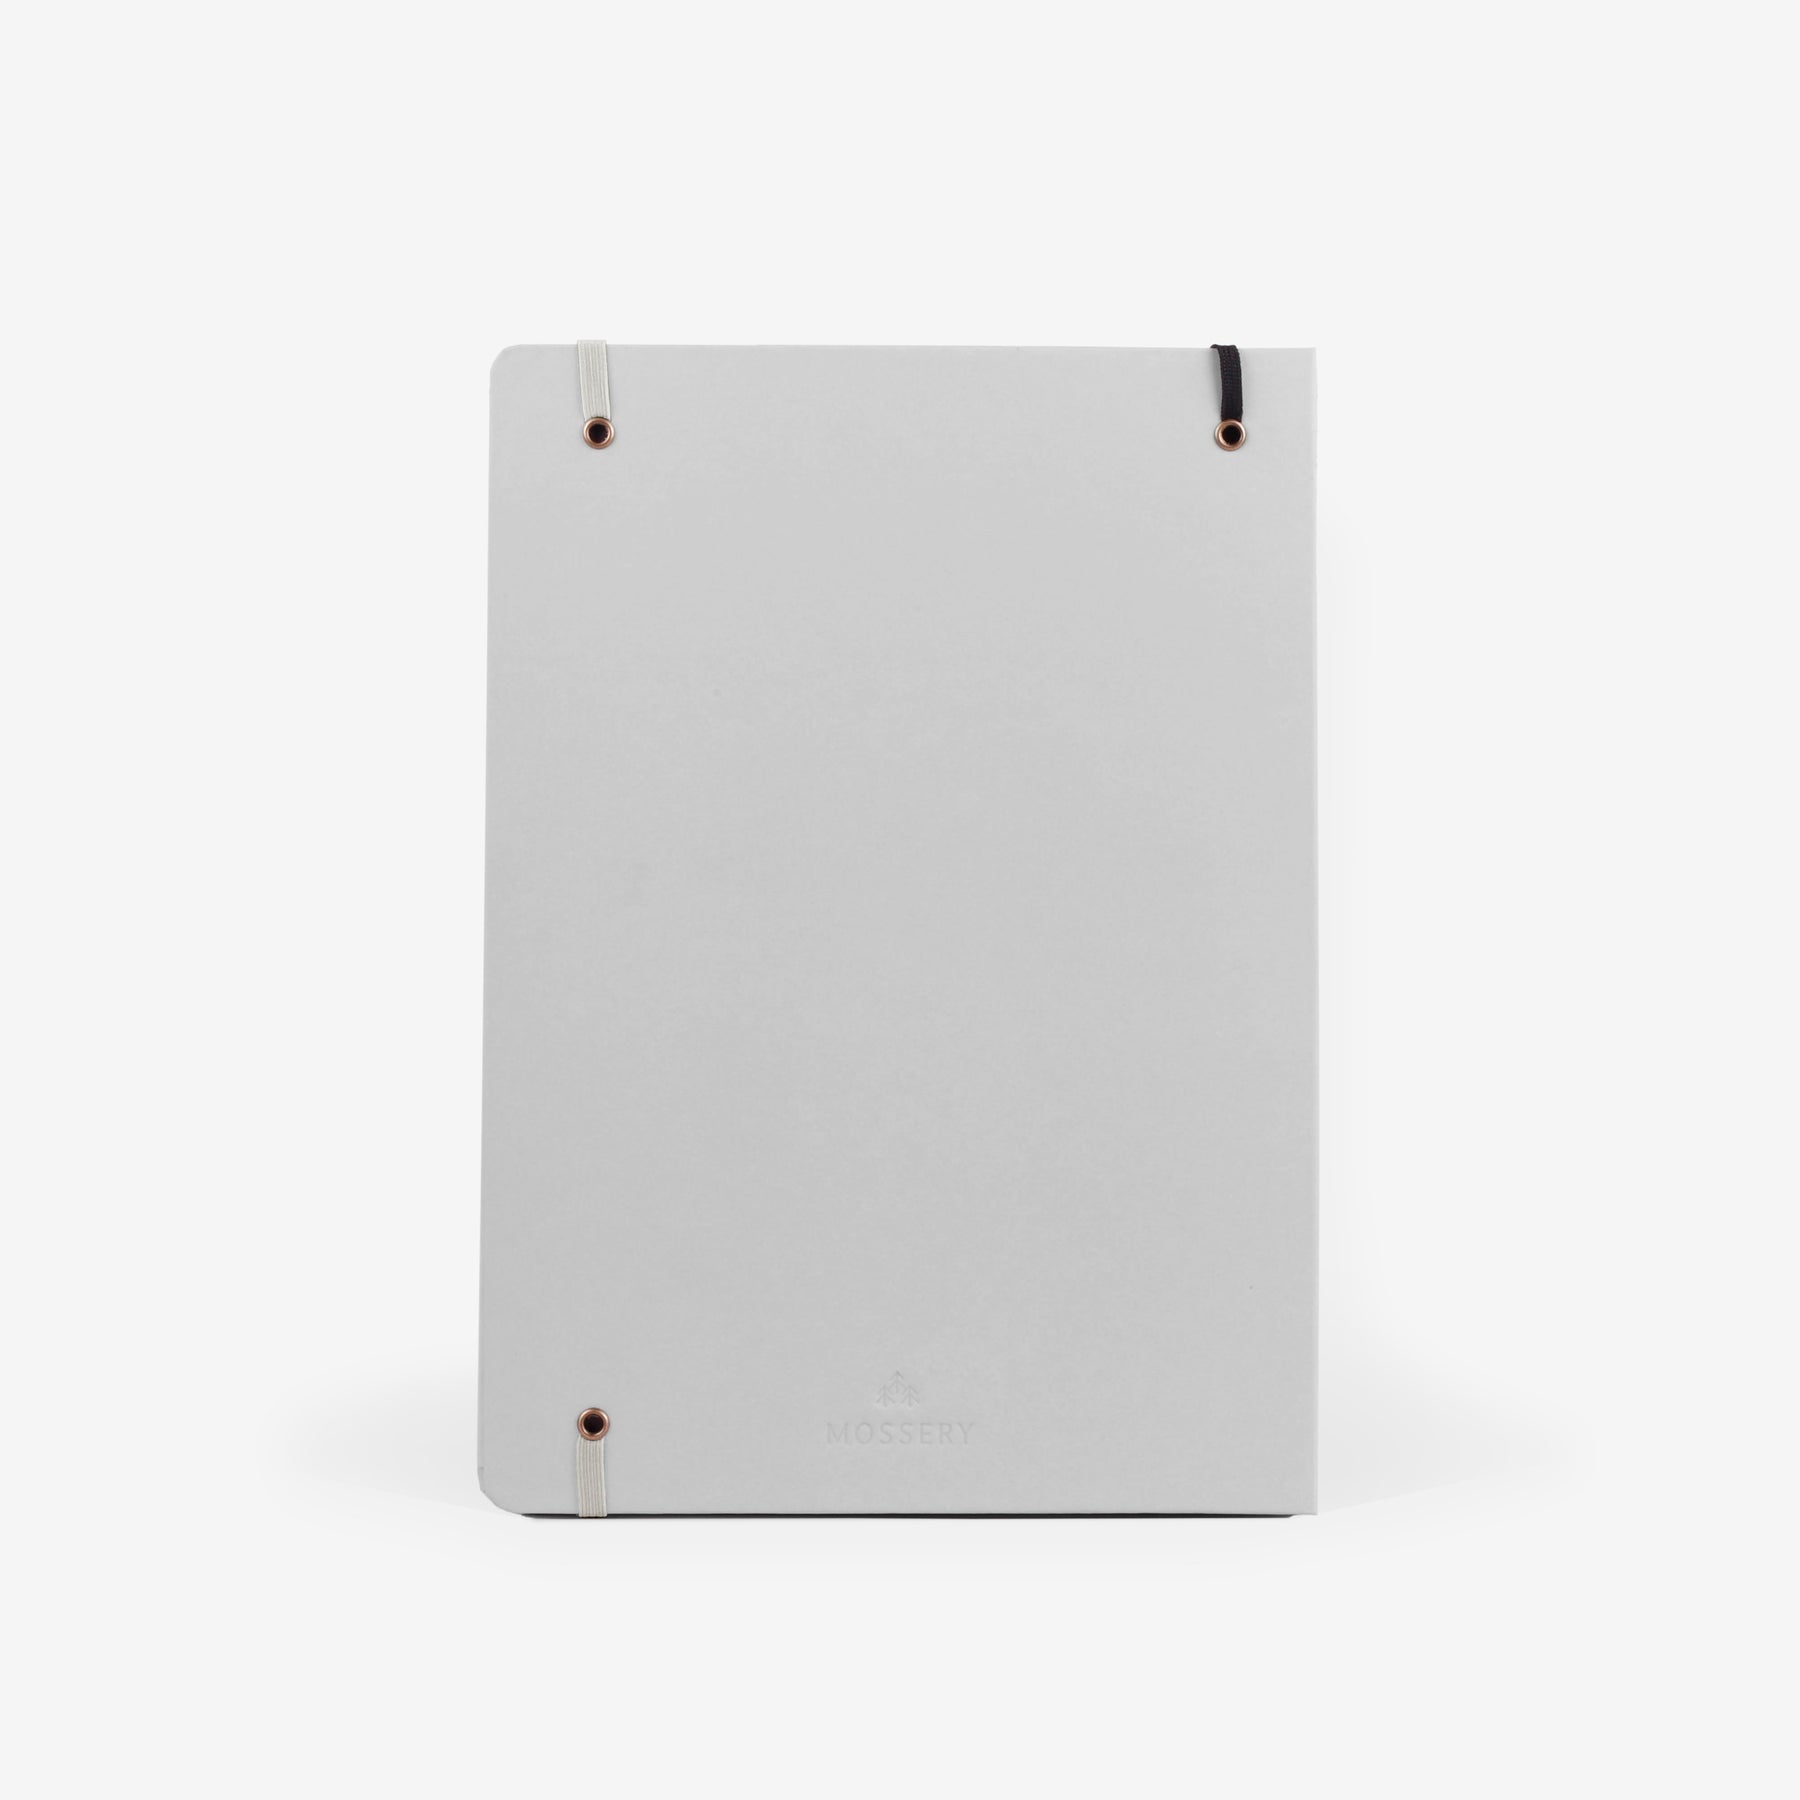 Plain Grey Large Wirebound Sketchbook